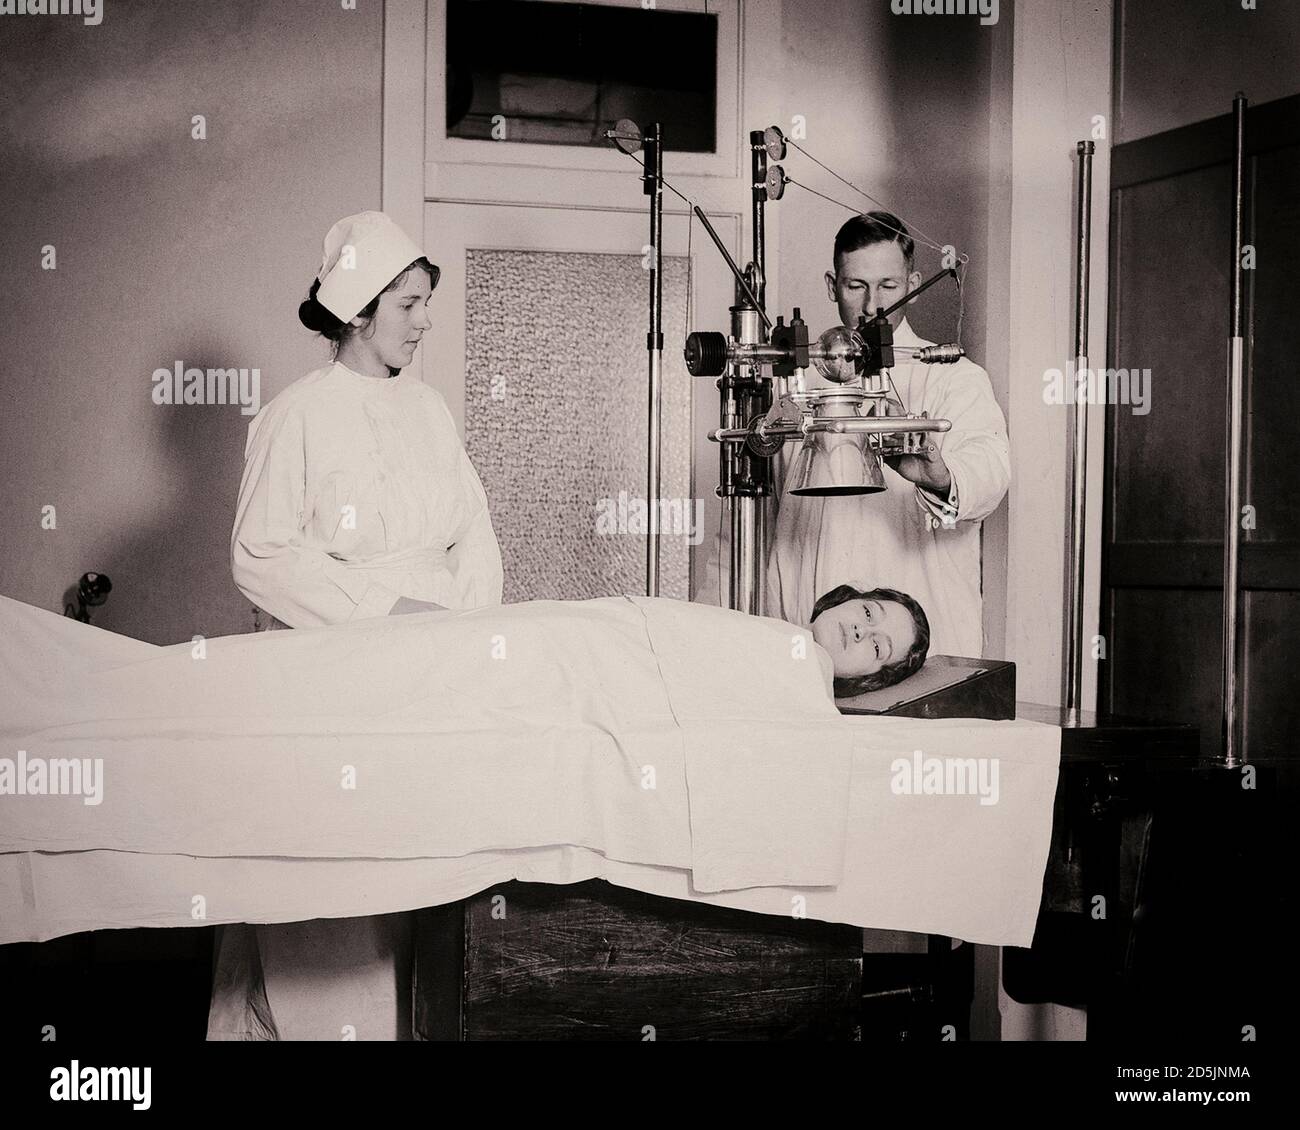 Foto de archivo del personal del hospital público tomar una radiografía de la cabeza de un paciente, EE.UU., 1920. Foto de stock